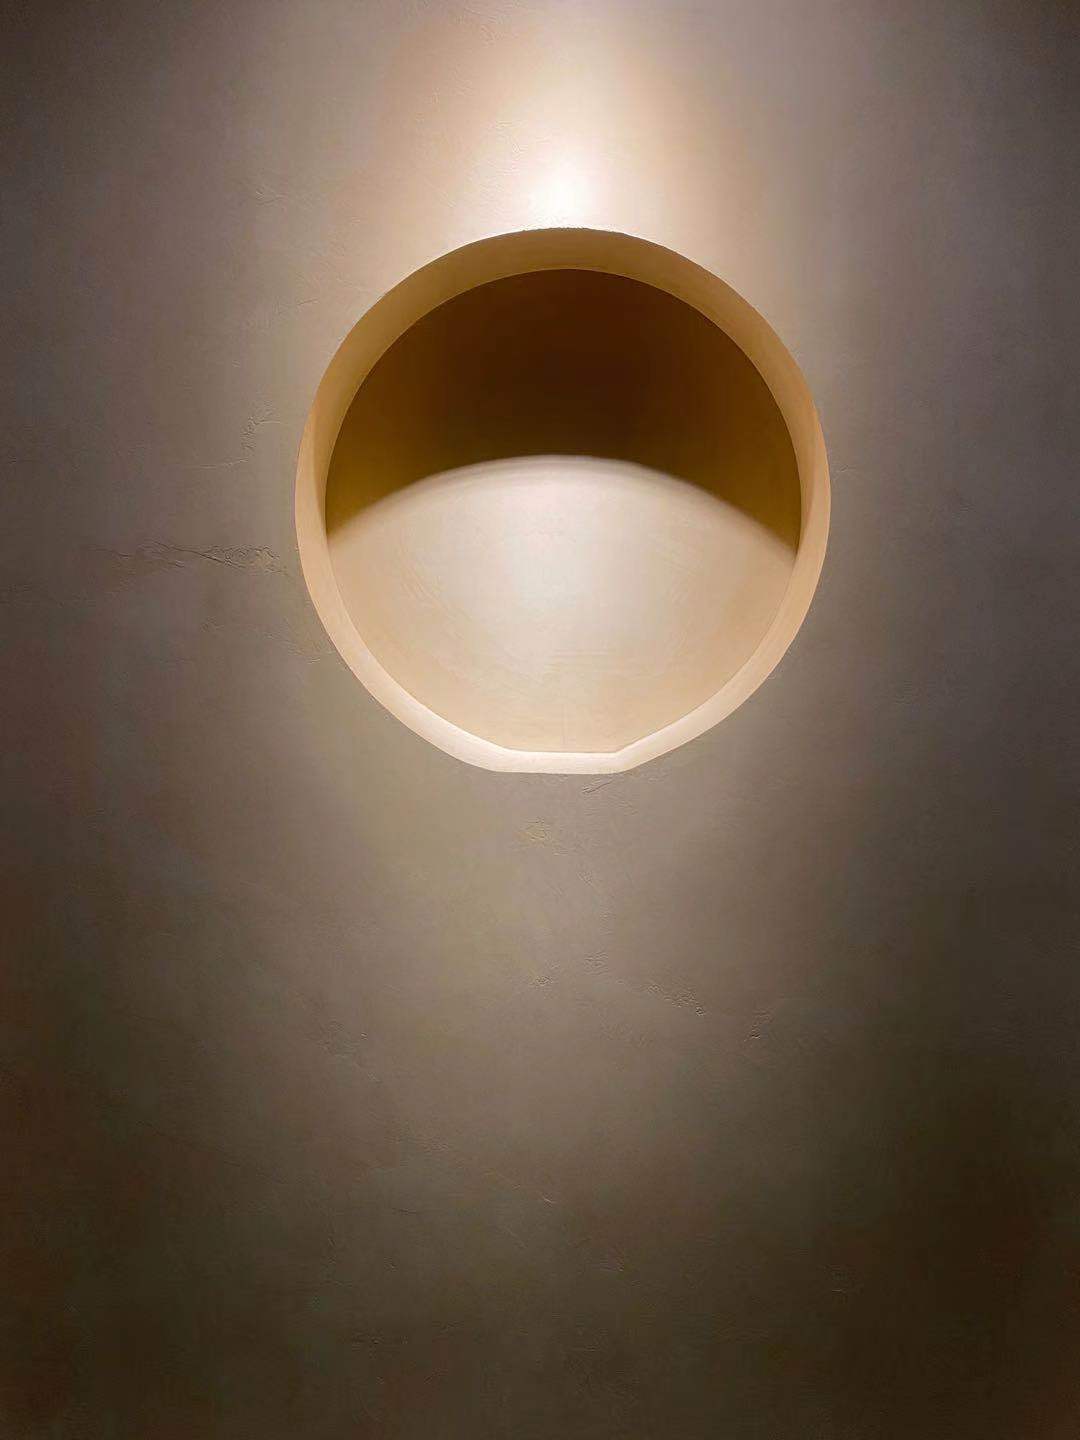 Béton ciré sur le mur d'une habitation de style minimaliste avec un éclairage qui met en valeur le revêtement